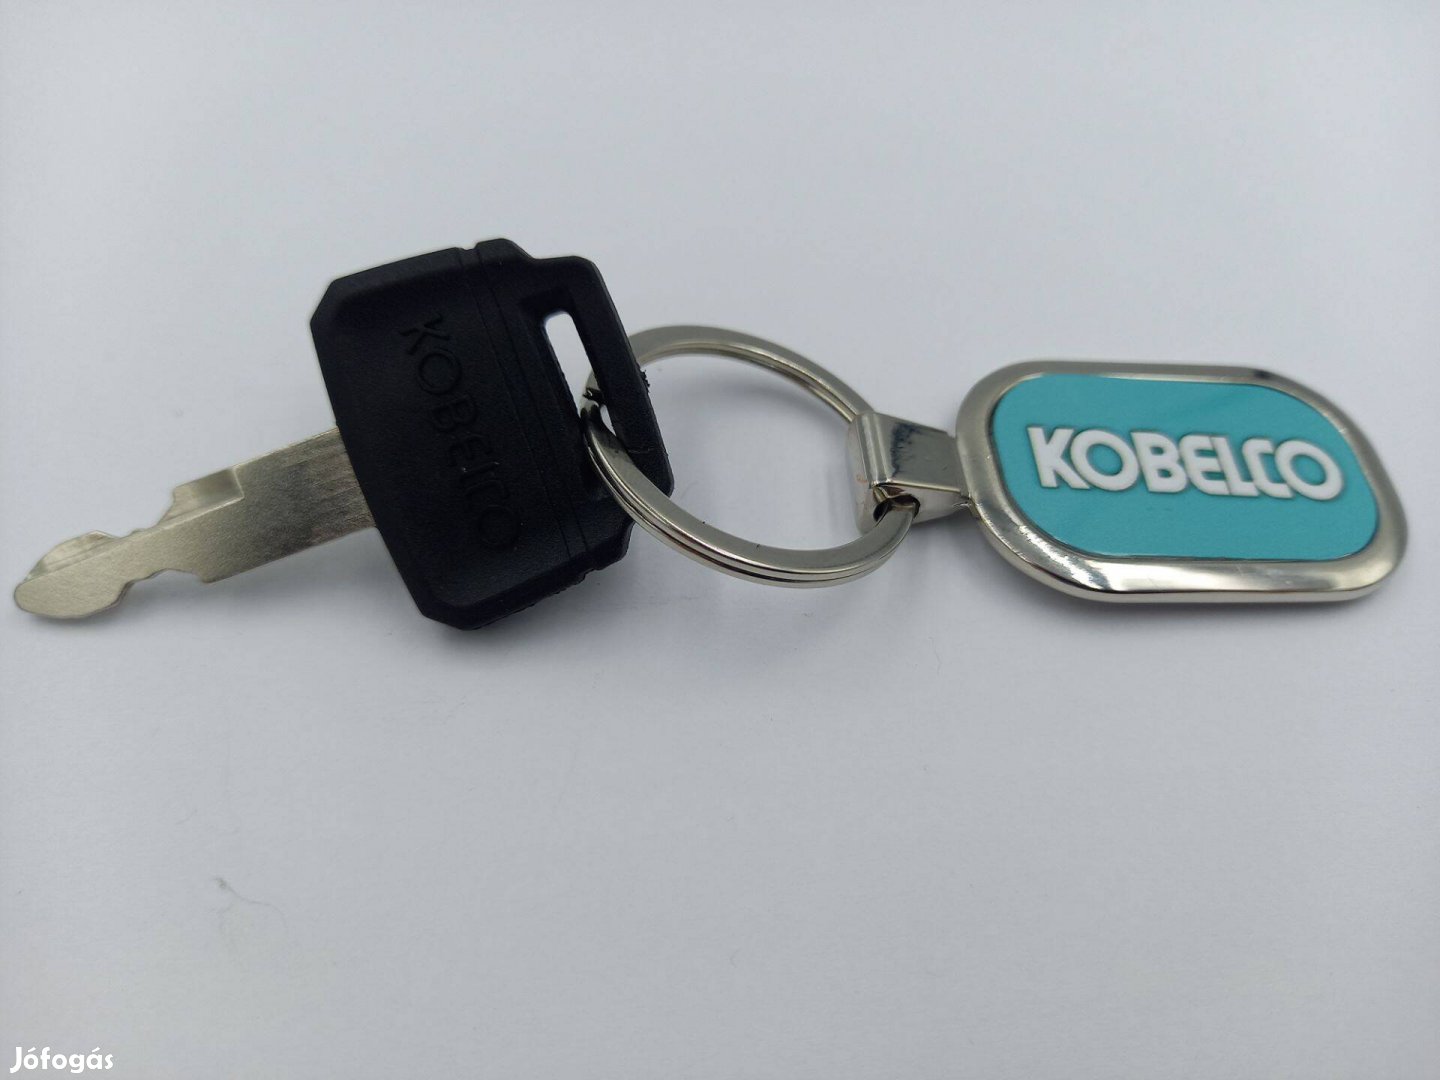 Kobelco munkagép kulcs (műanyag Kobelco felirattal fej rész illetve fu